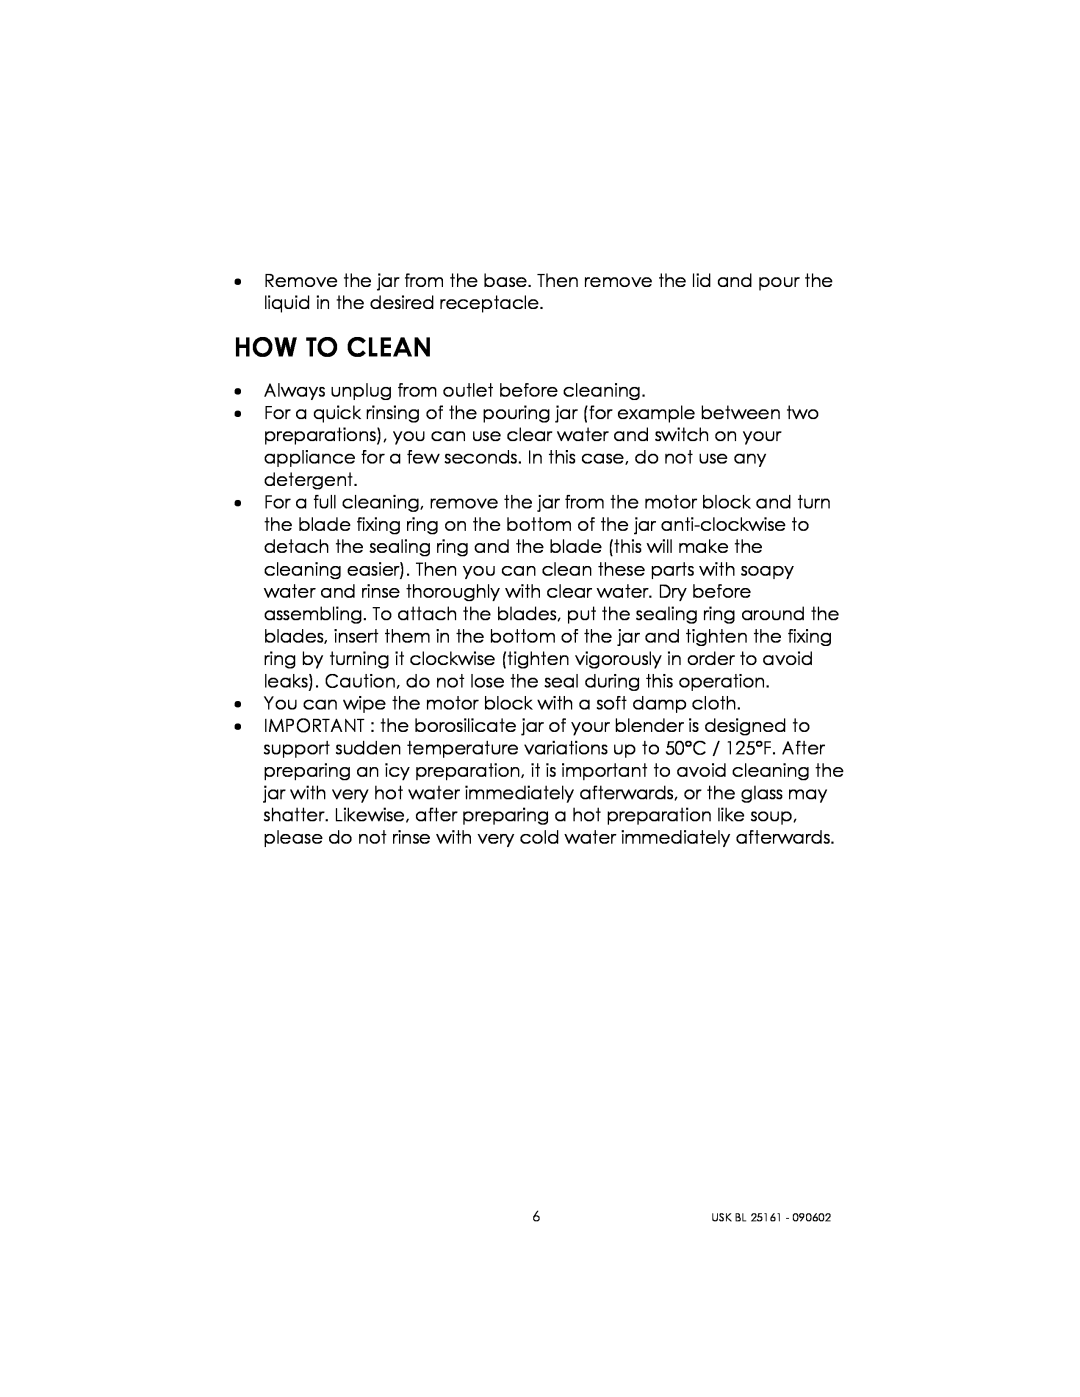 Kalorik usk bl 25161 manual How To Clean 